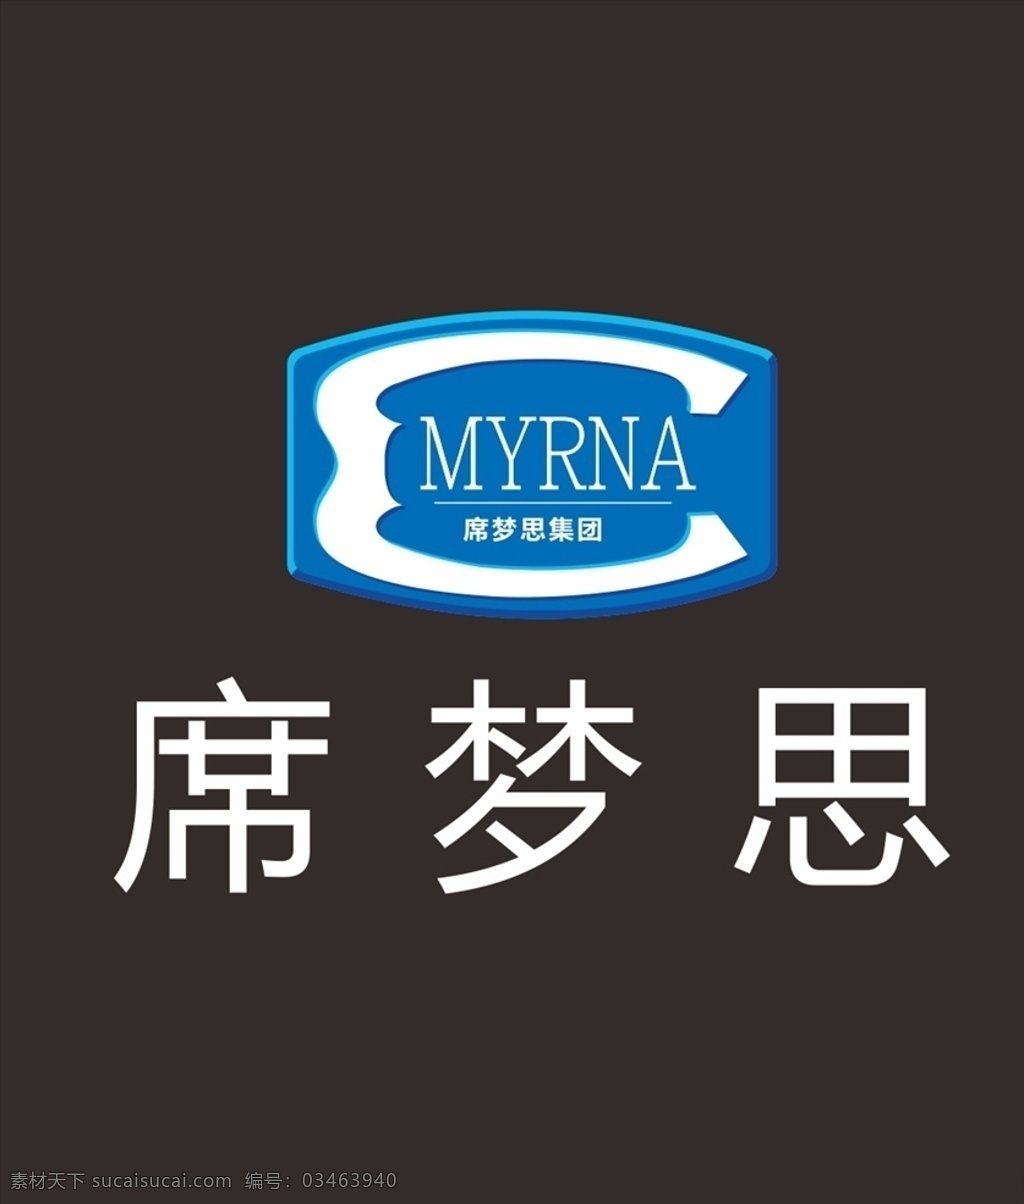 席梦思标志 席梦思 标志 logo 床垫 myrna logo设计